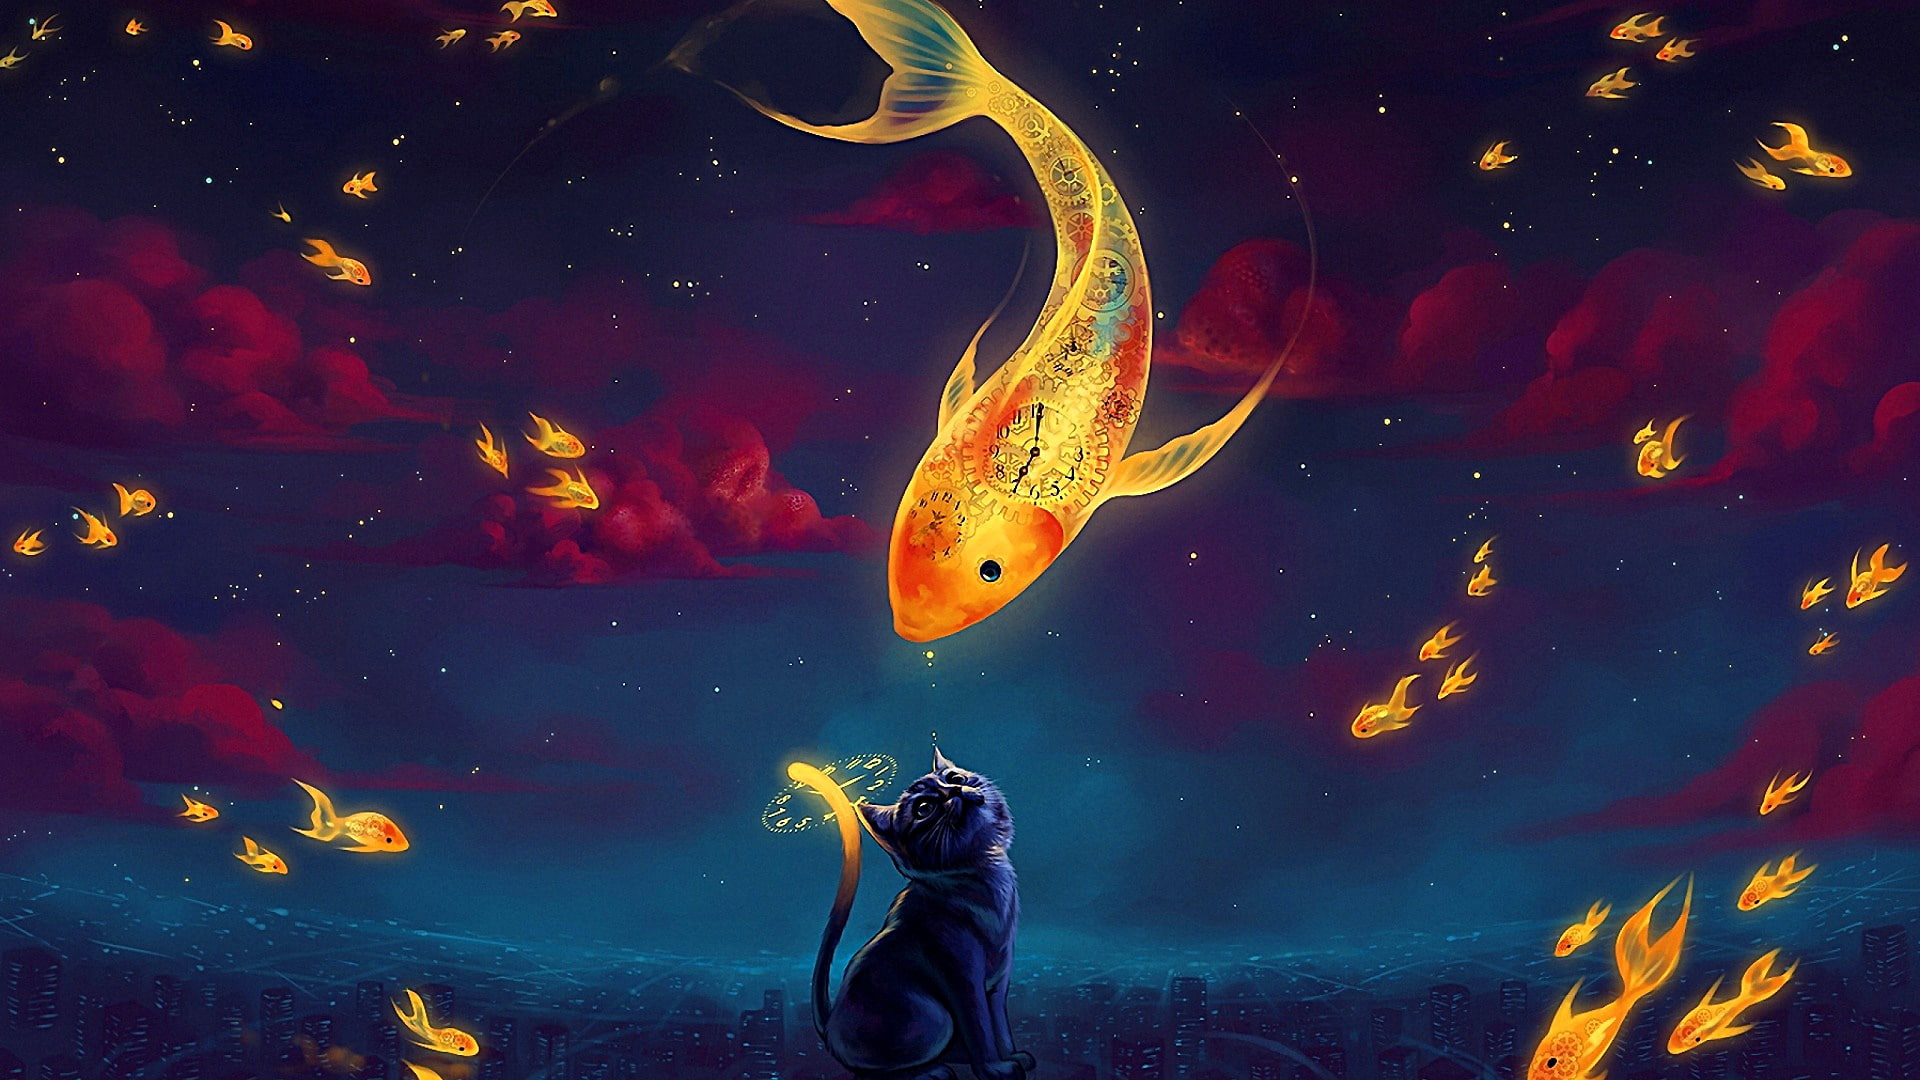 sky, darkness, fish, cat, fantasy art, night, illustration